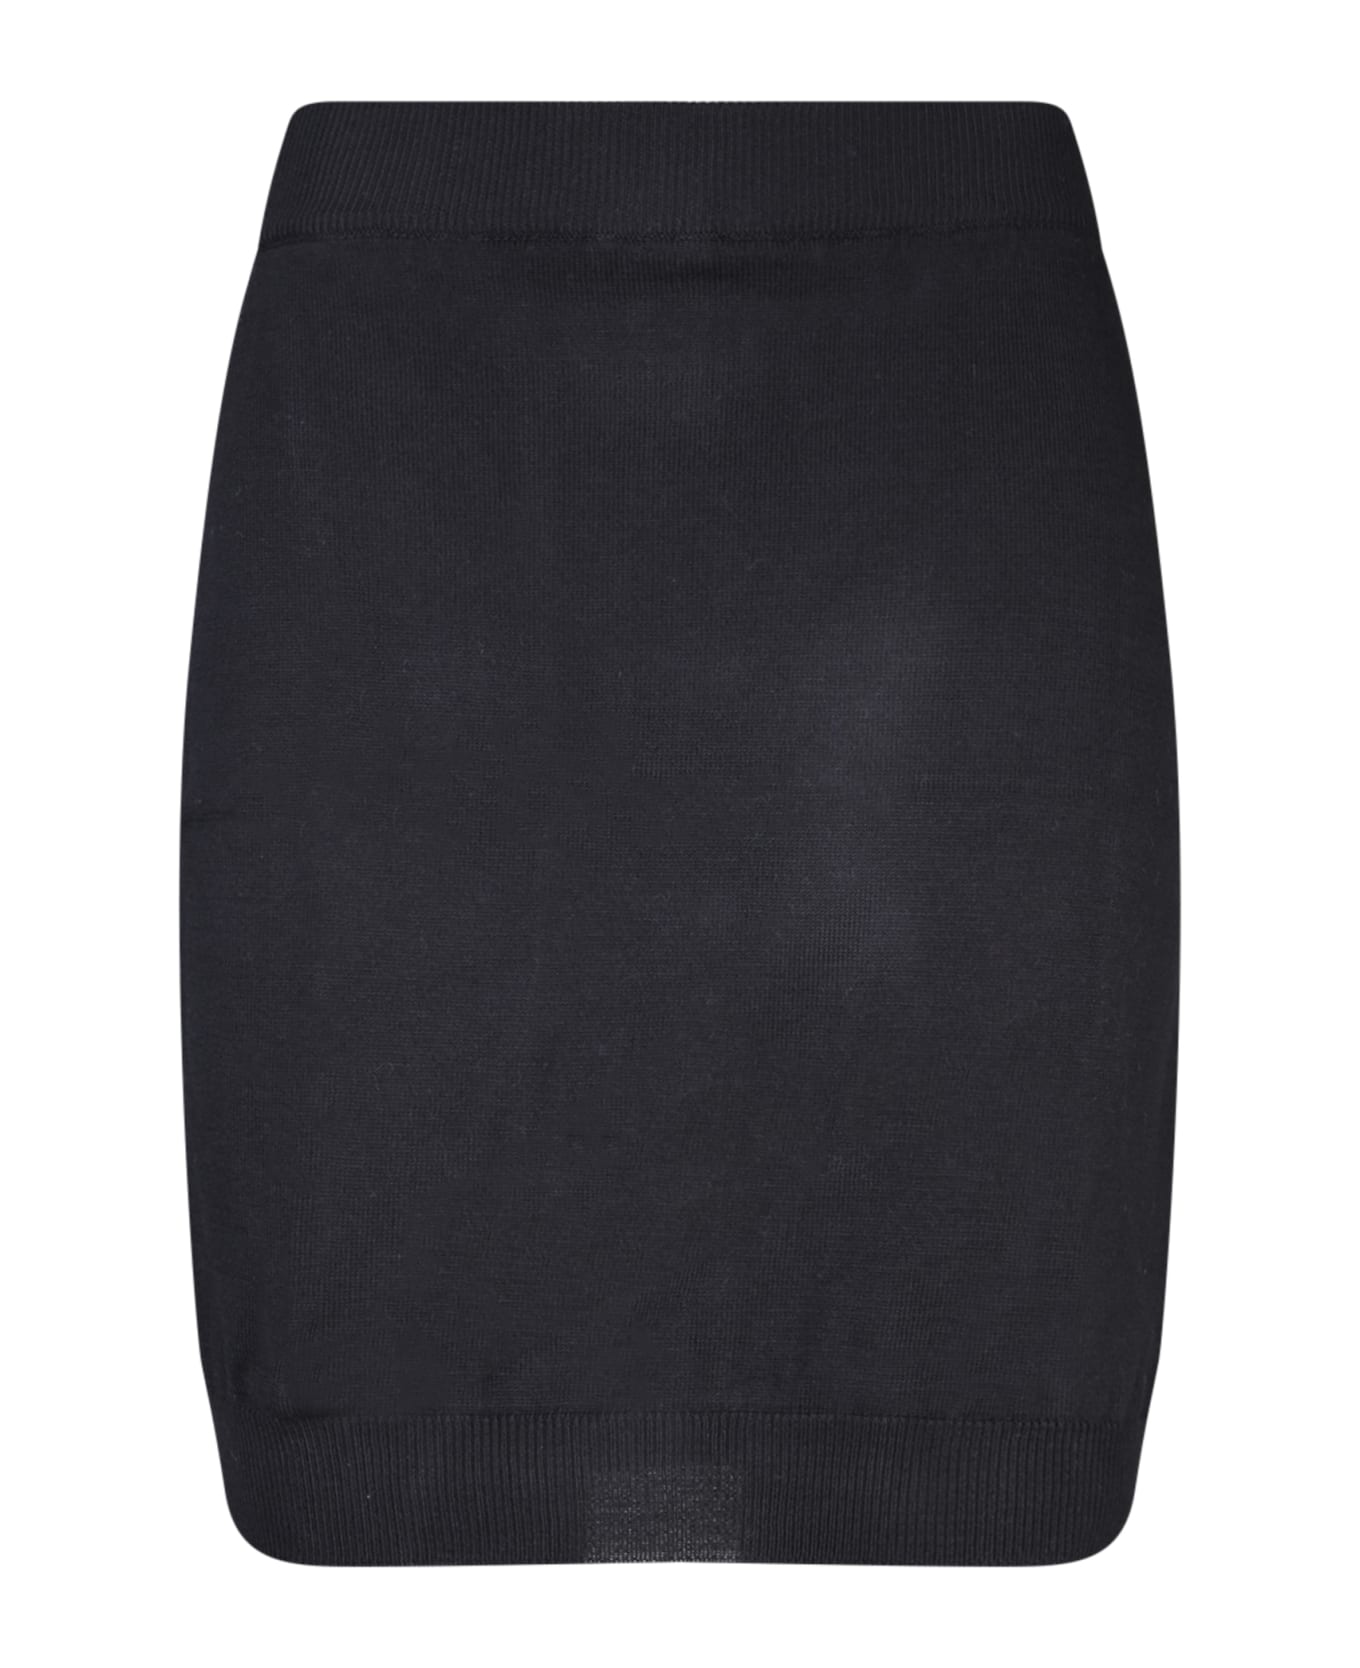 Vivienne Westwood Bea Black Mini Skirt - Black